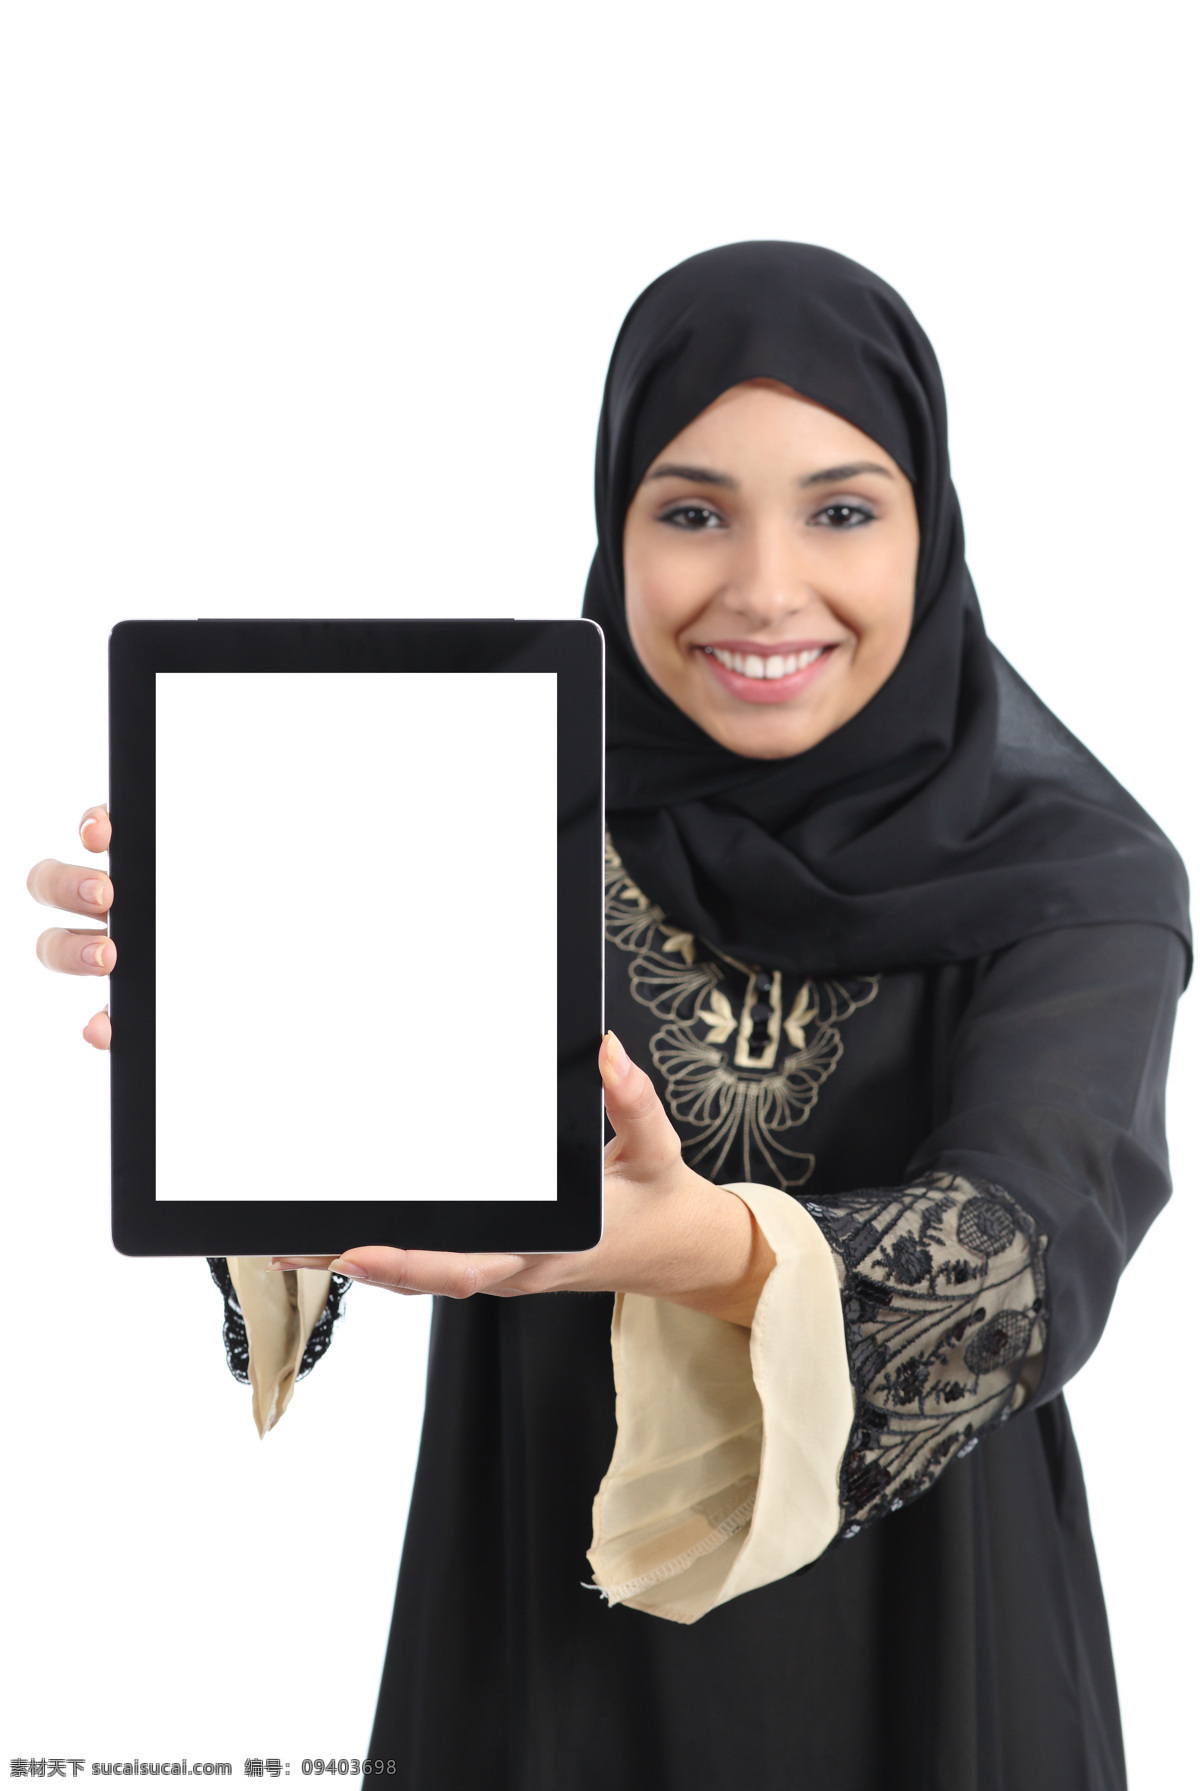 捧 平板电脑 穆斯林 女孩 穆斯林美女 穆斯林女孩 外国女性 阿拉伯女人 中亚女性 西亚女性 伊斯兰美女 美女图片 人物图片